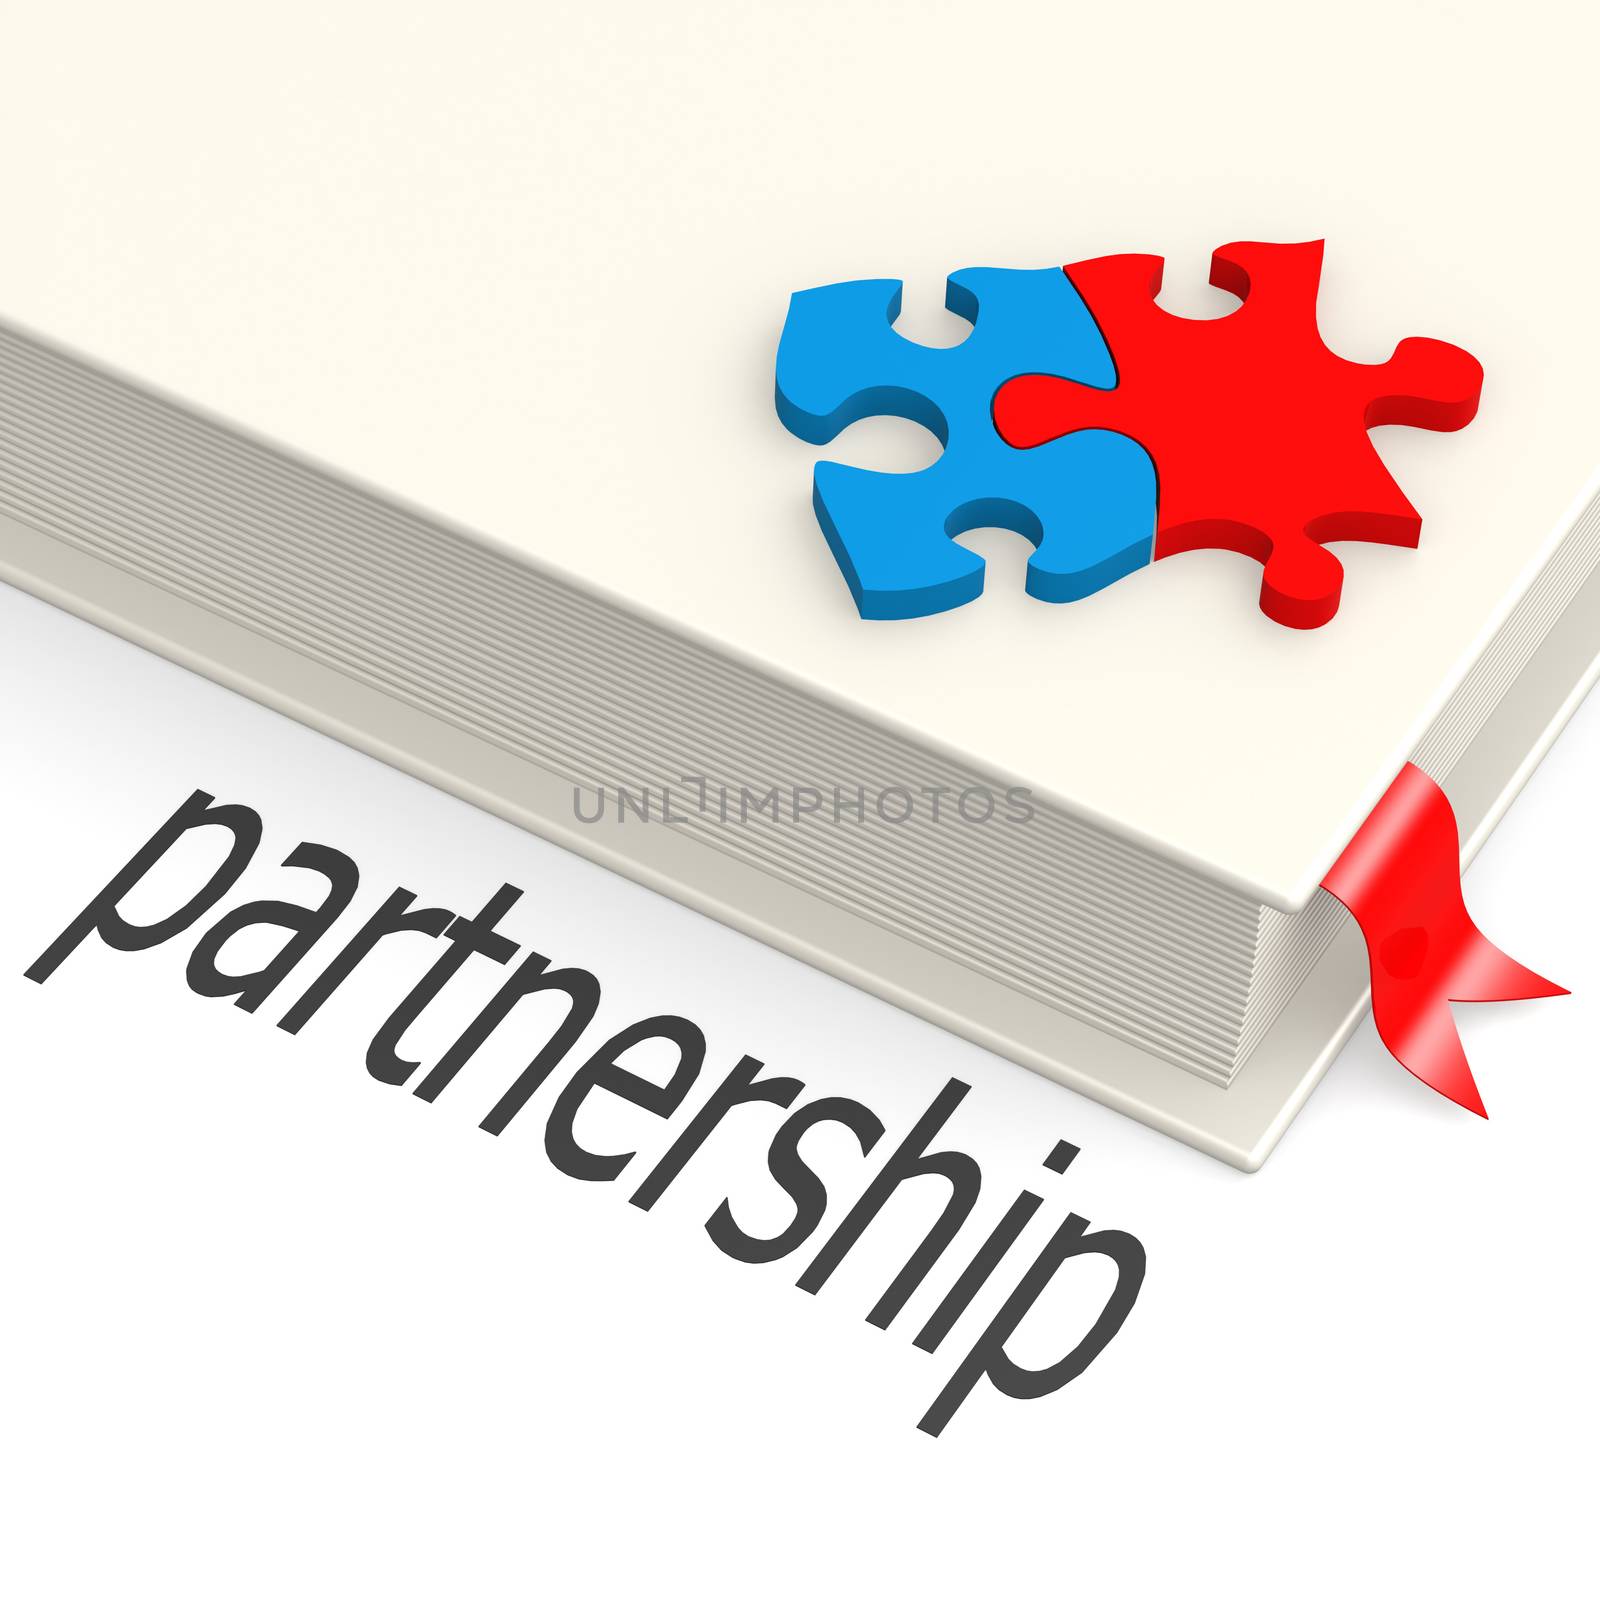 Partnership book